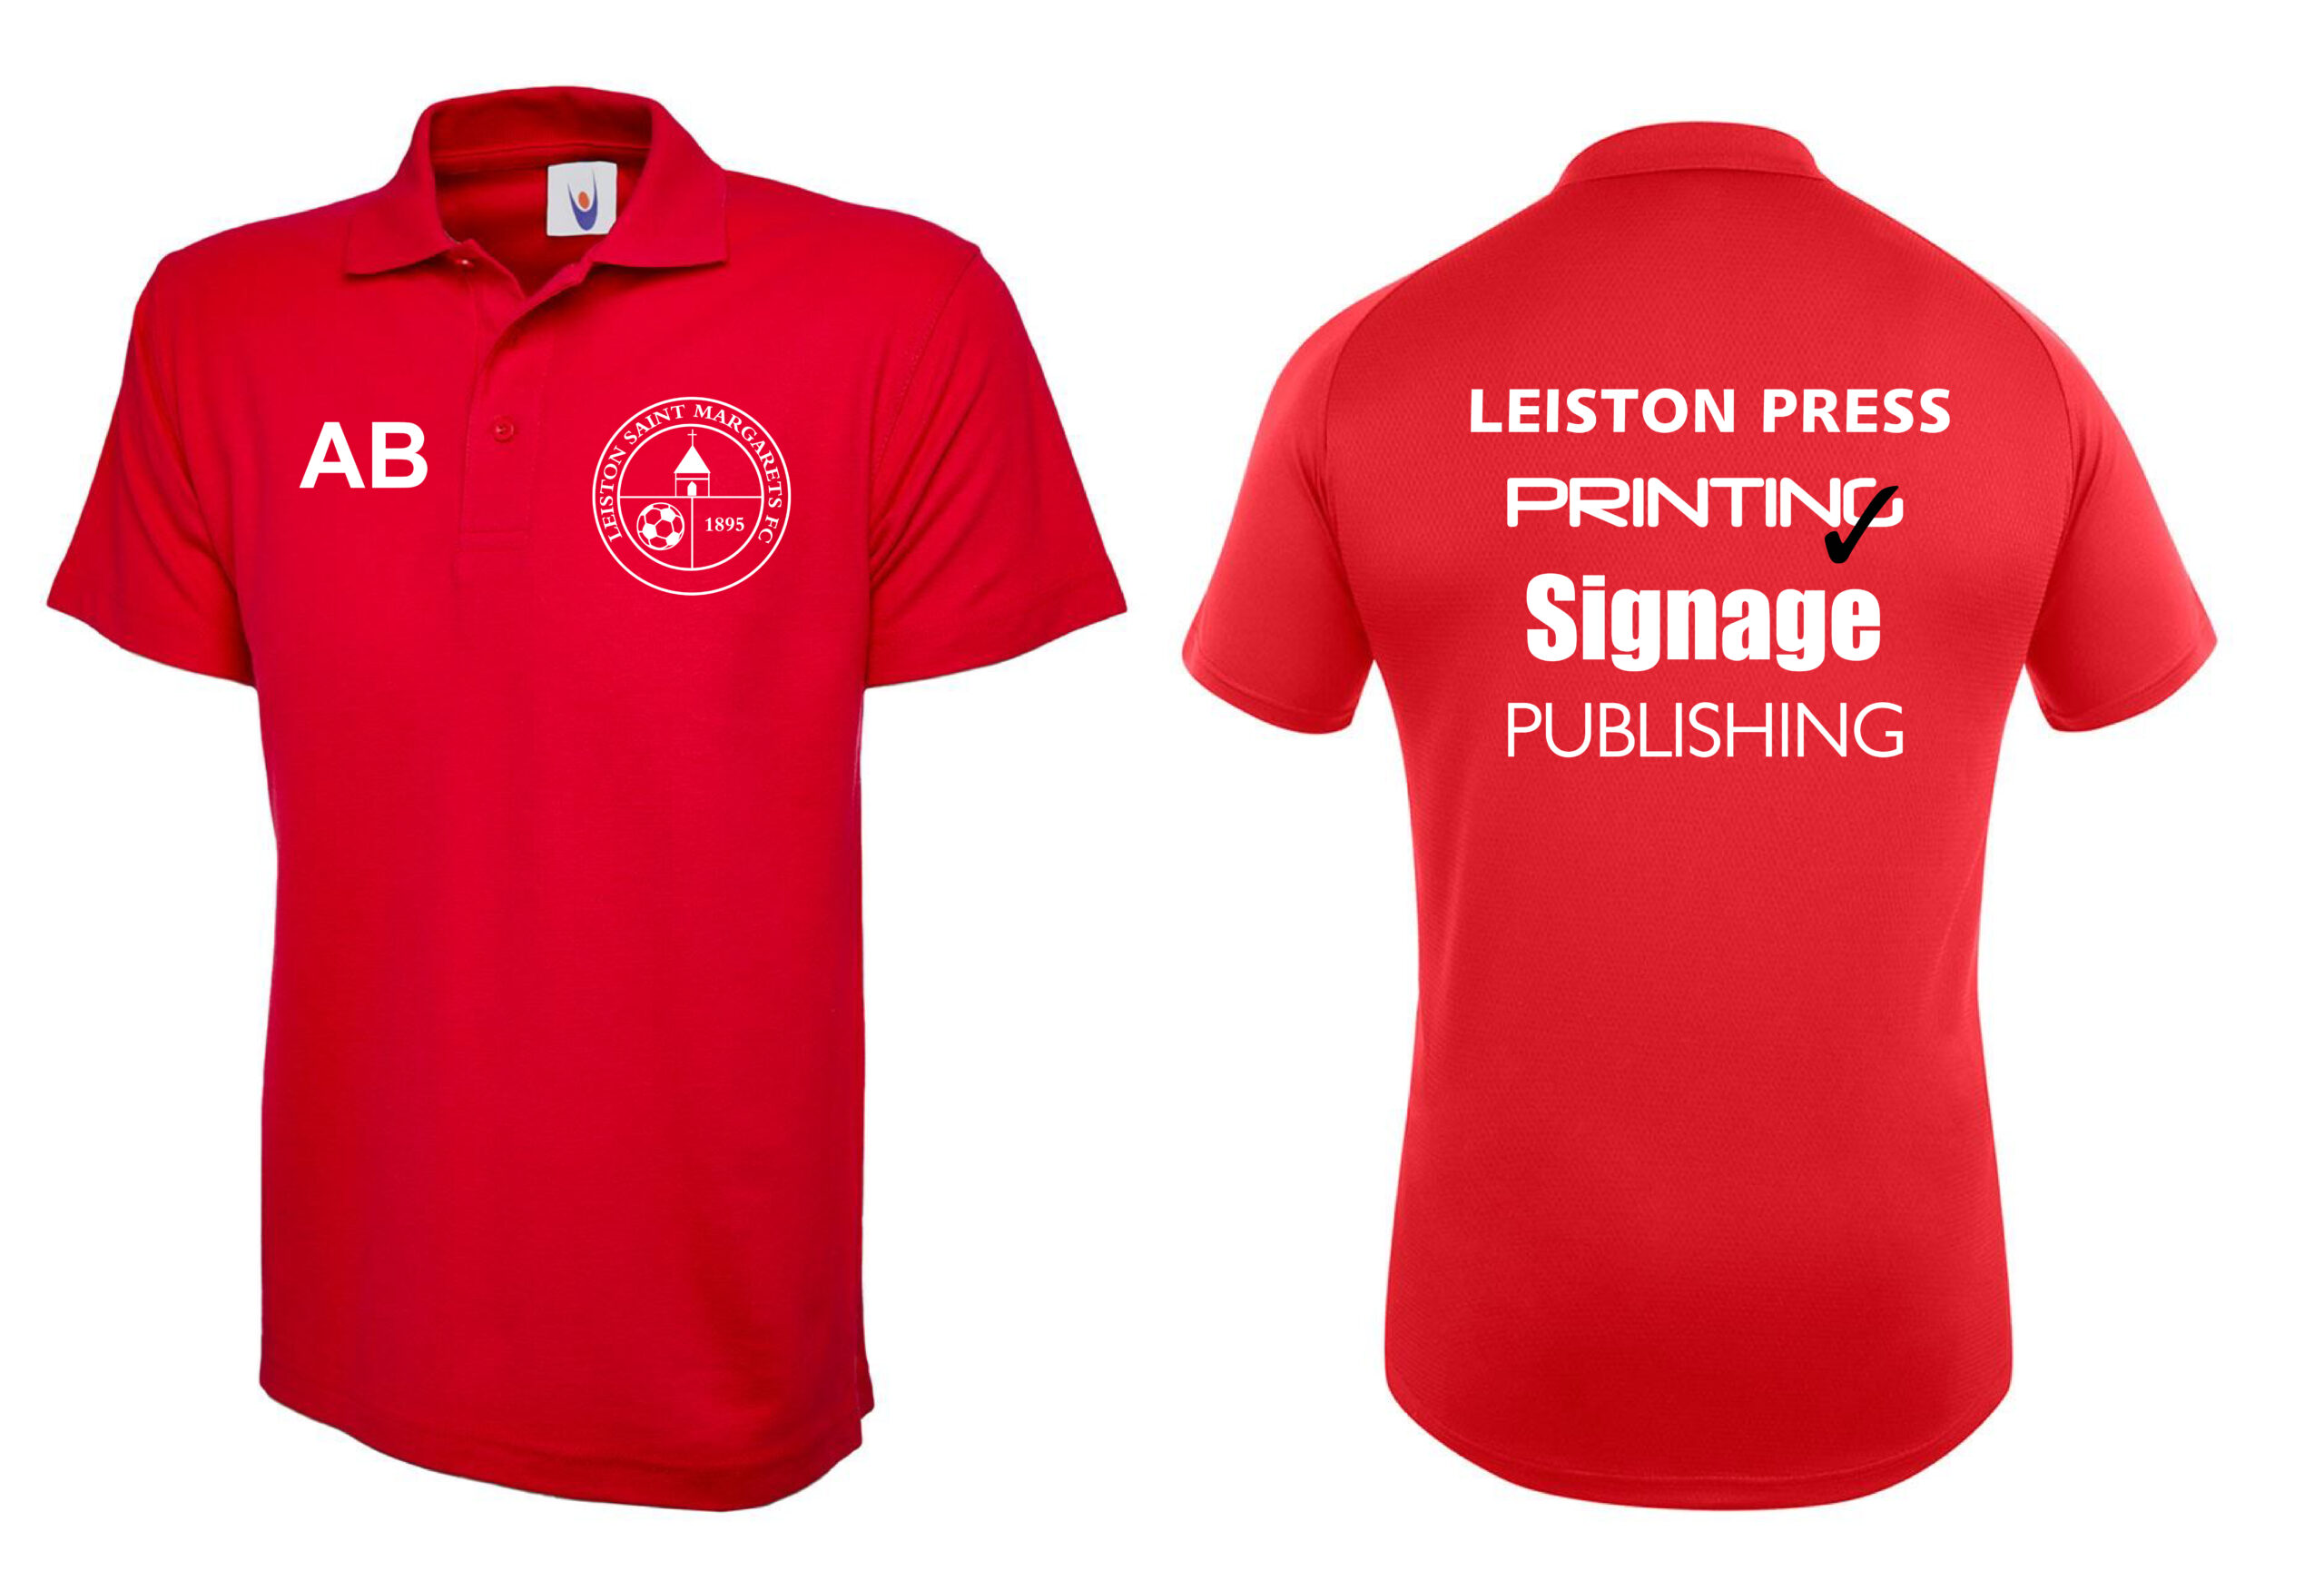 Custom Clothing Printing - Leiston Press